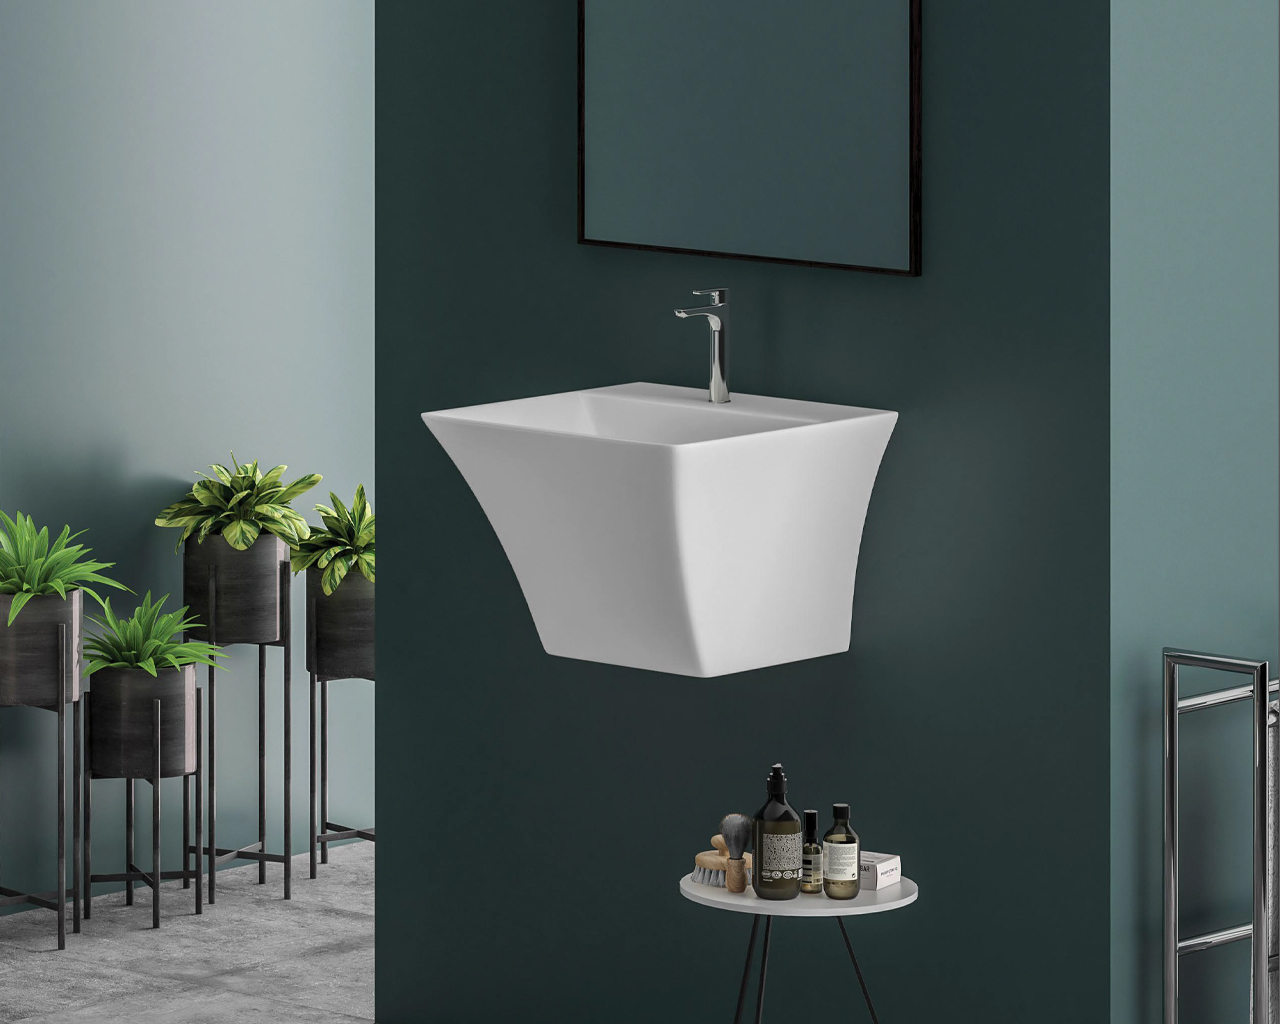 4 handwash sink designs that add luxury to your bathroom